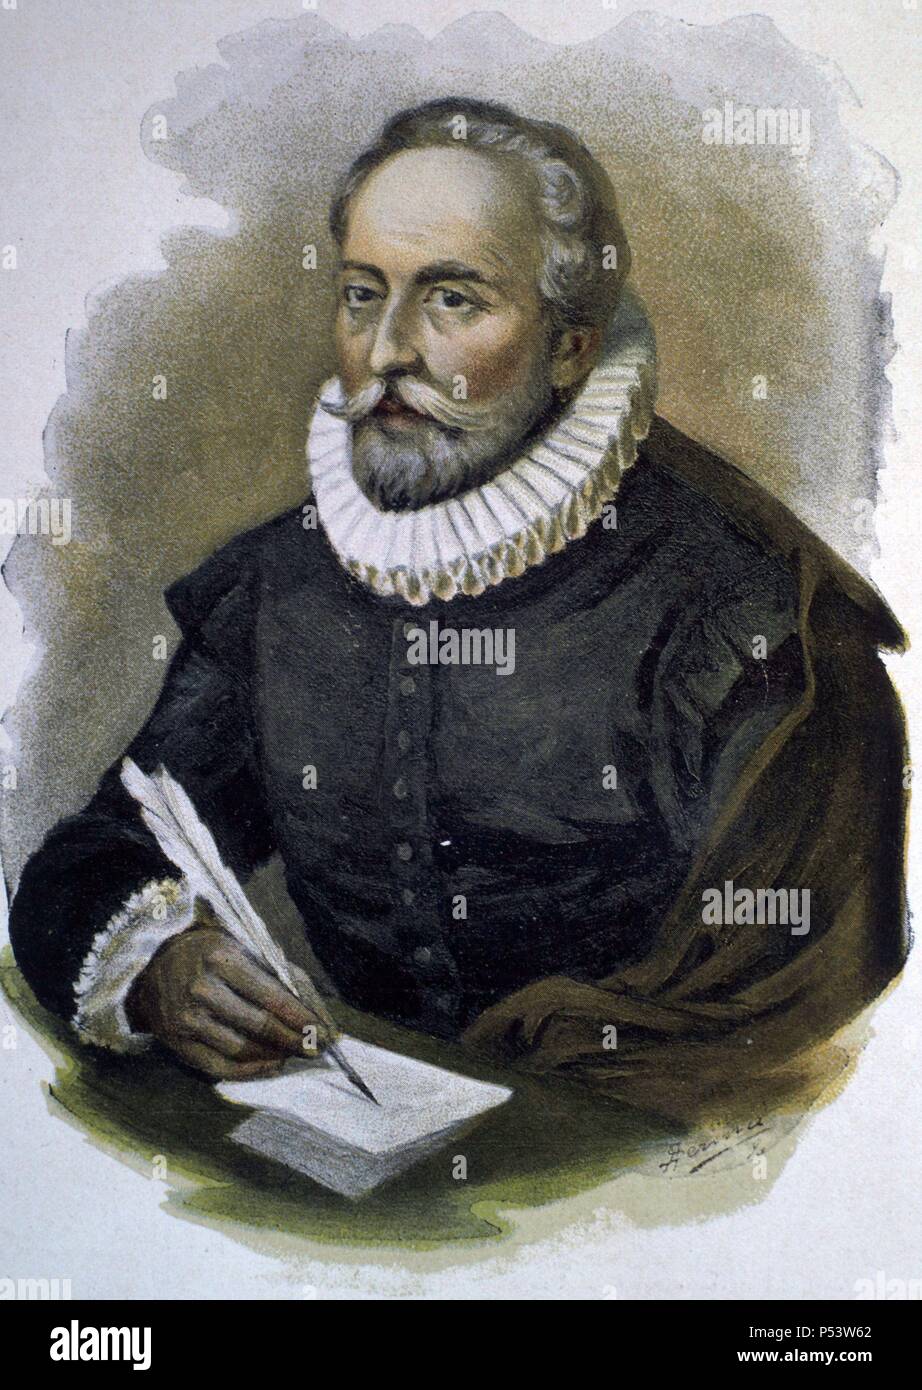 Miguel de Cervantes Saavedra (1547-1616), escritor y dramaturgo español. Stock Photo